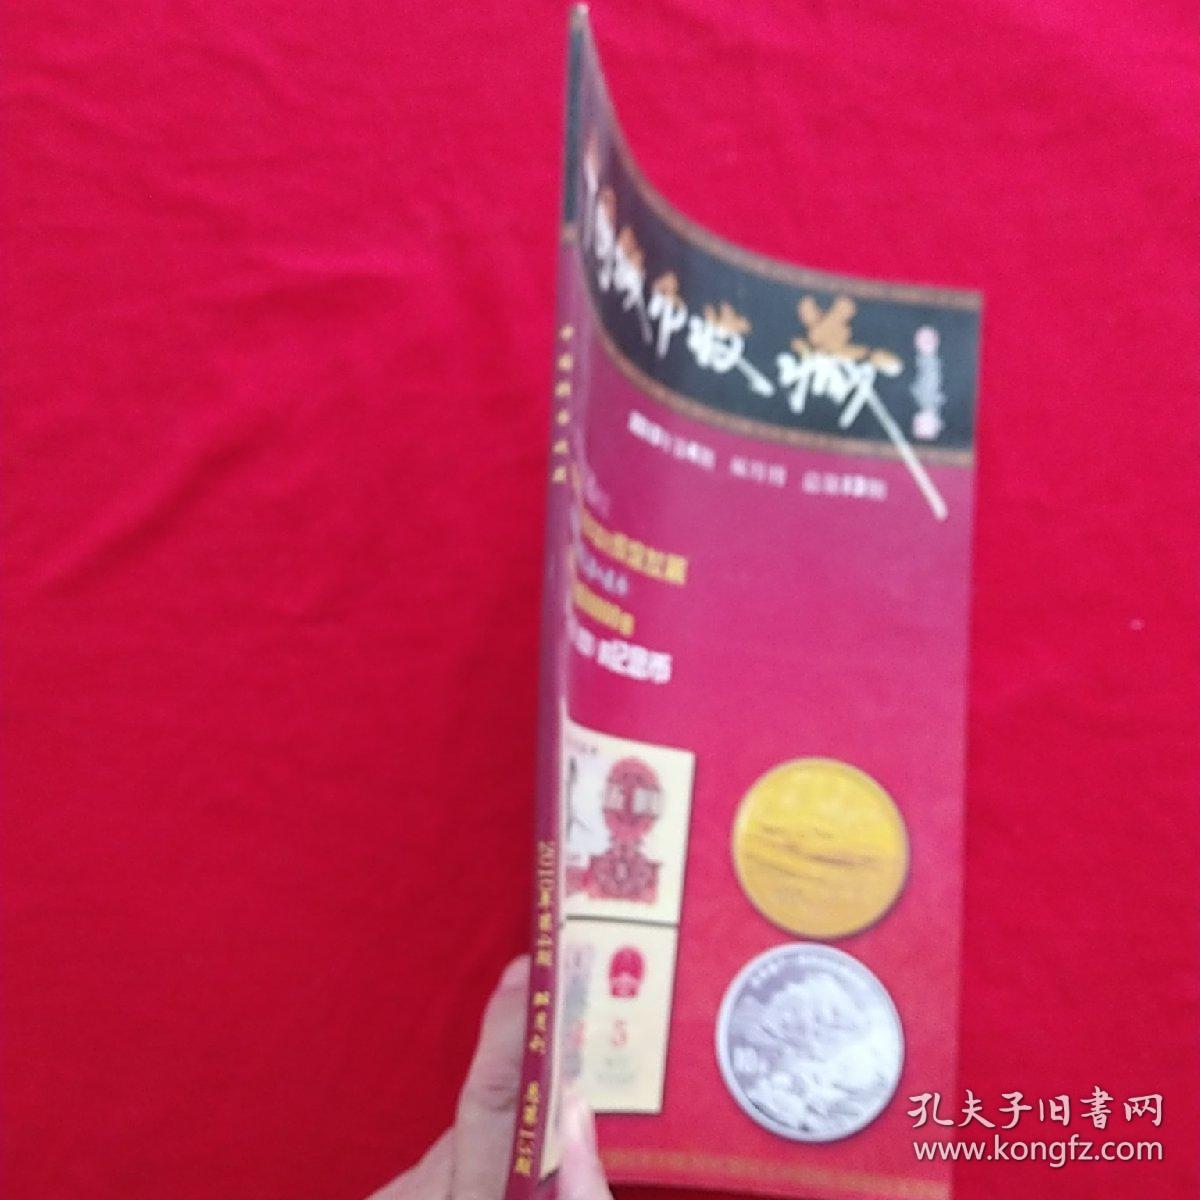 中国钱币收藏     杂志